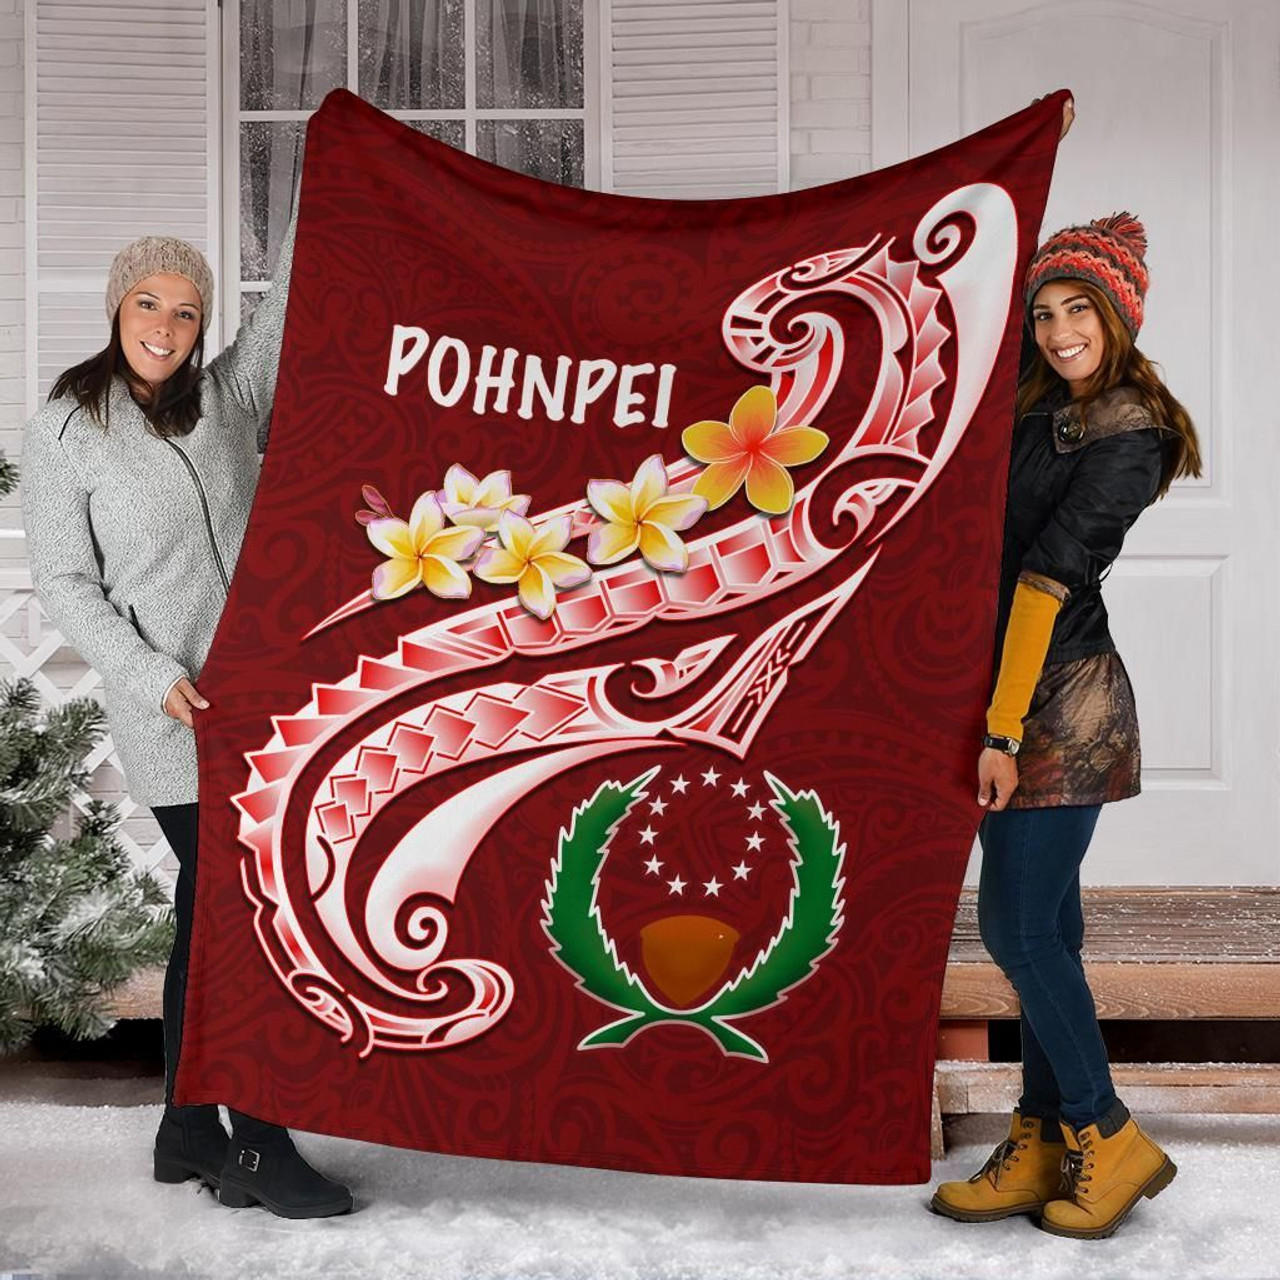 Pohnpei Premium Blanket - Pohnpei Seal Polynesian Patterns Plumeria 6